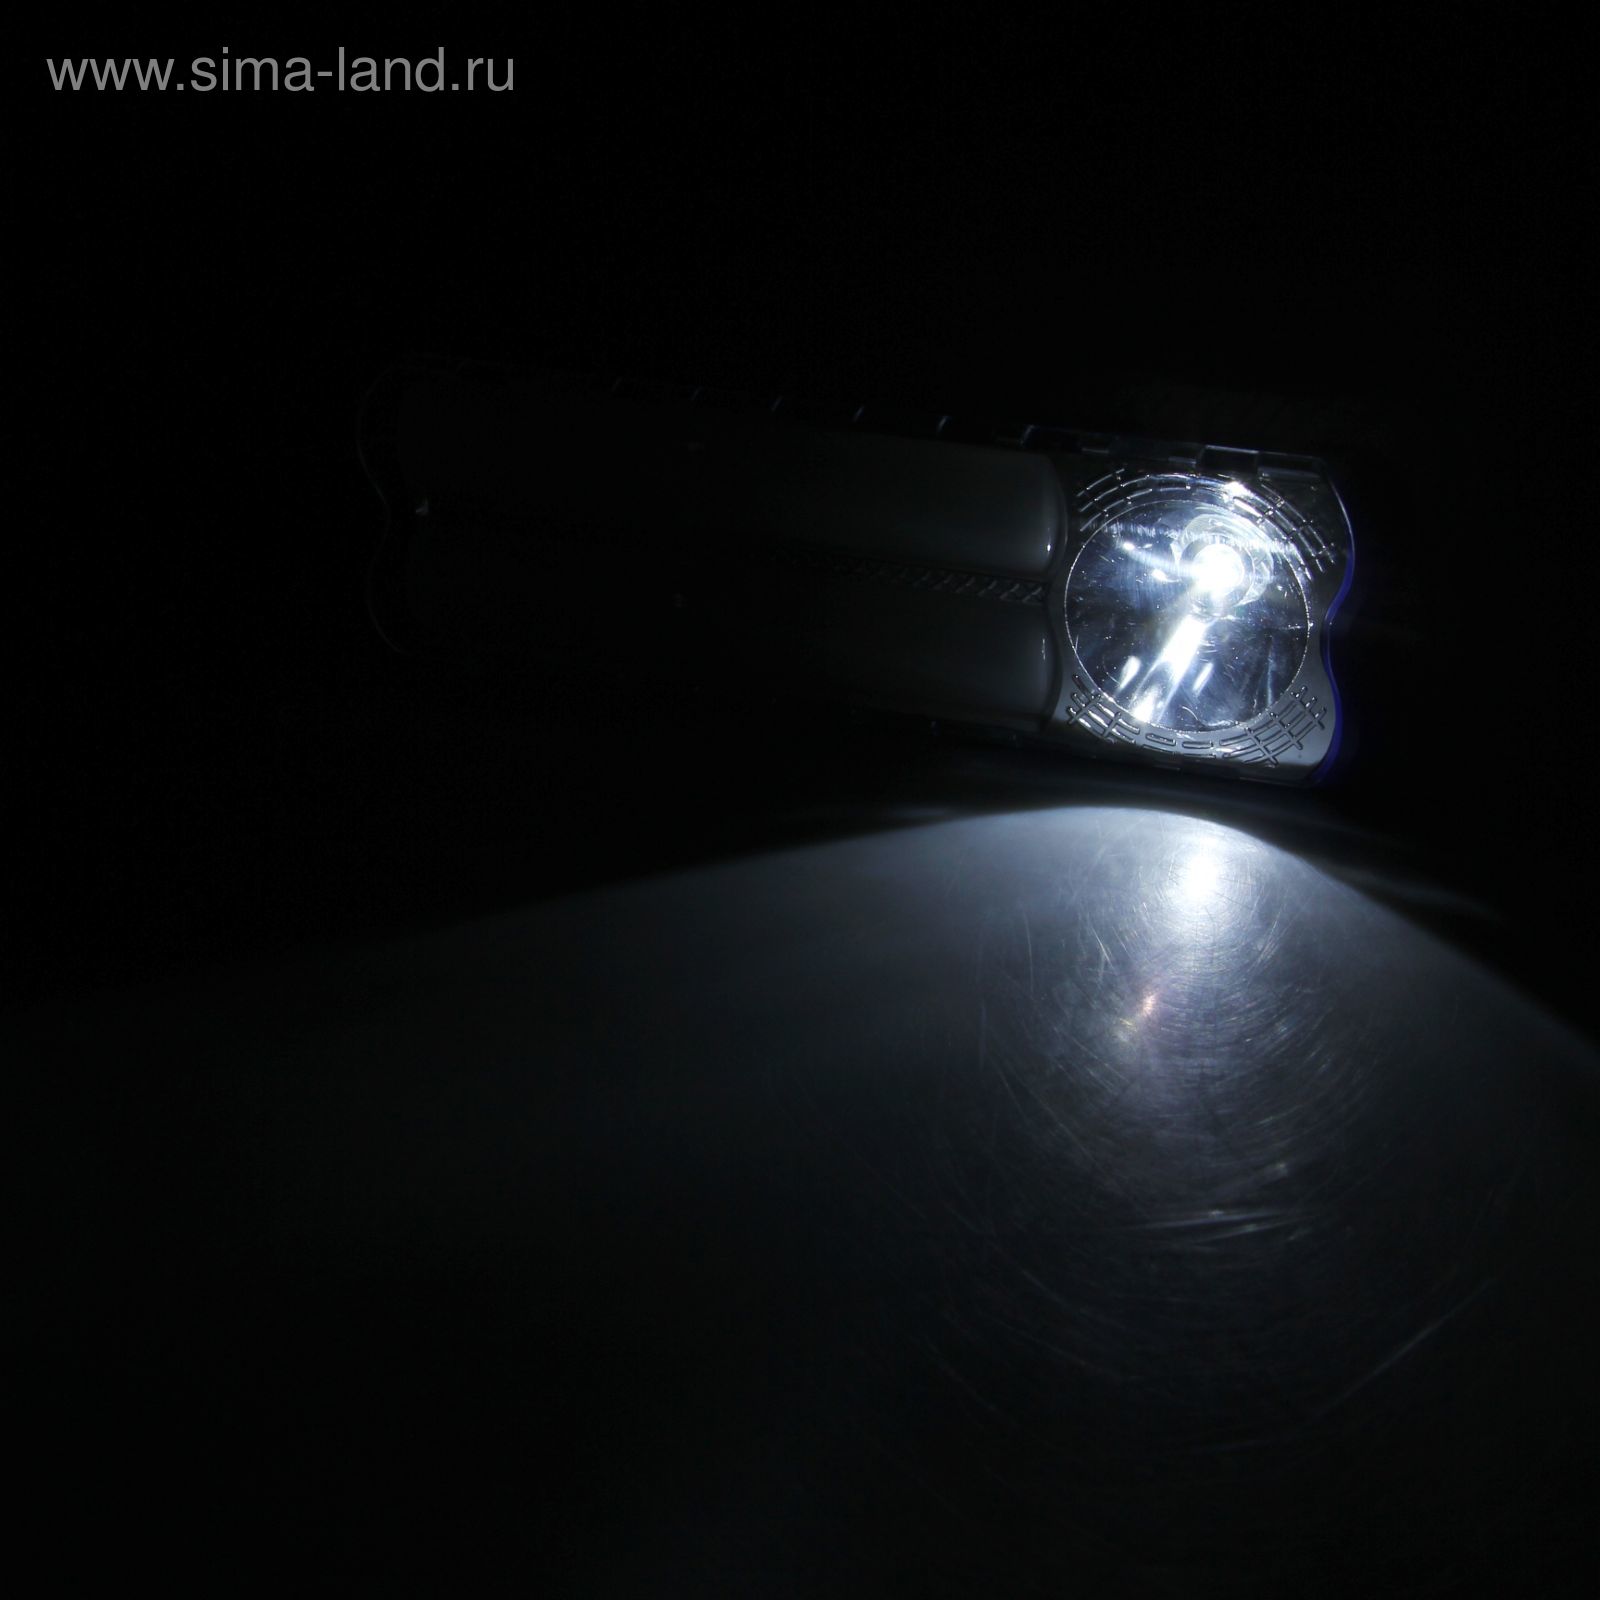 Переносной фонарь с петлёй для ношения «Блик», 2 диода, микс